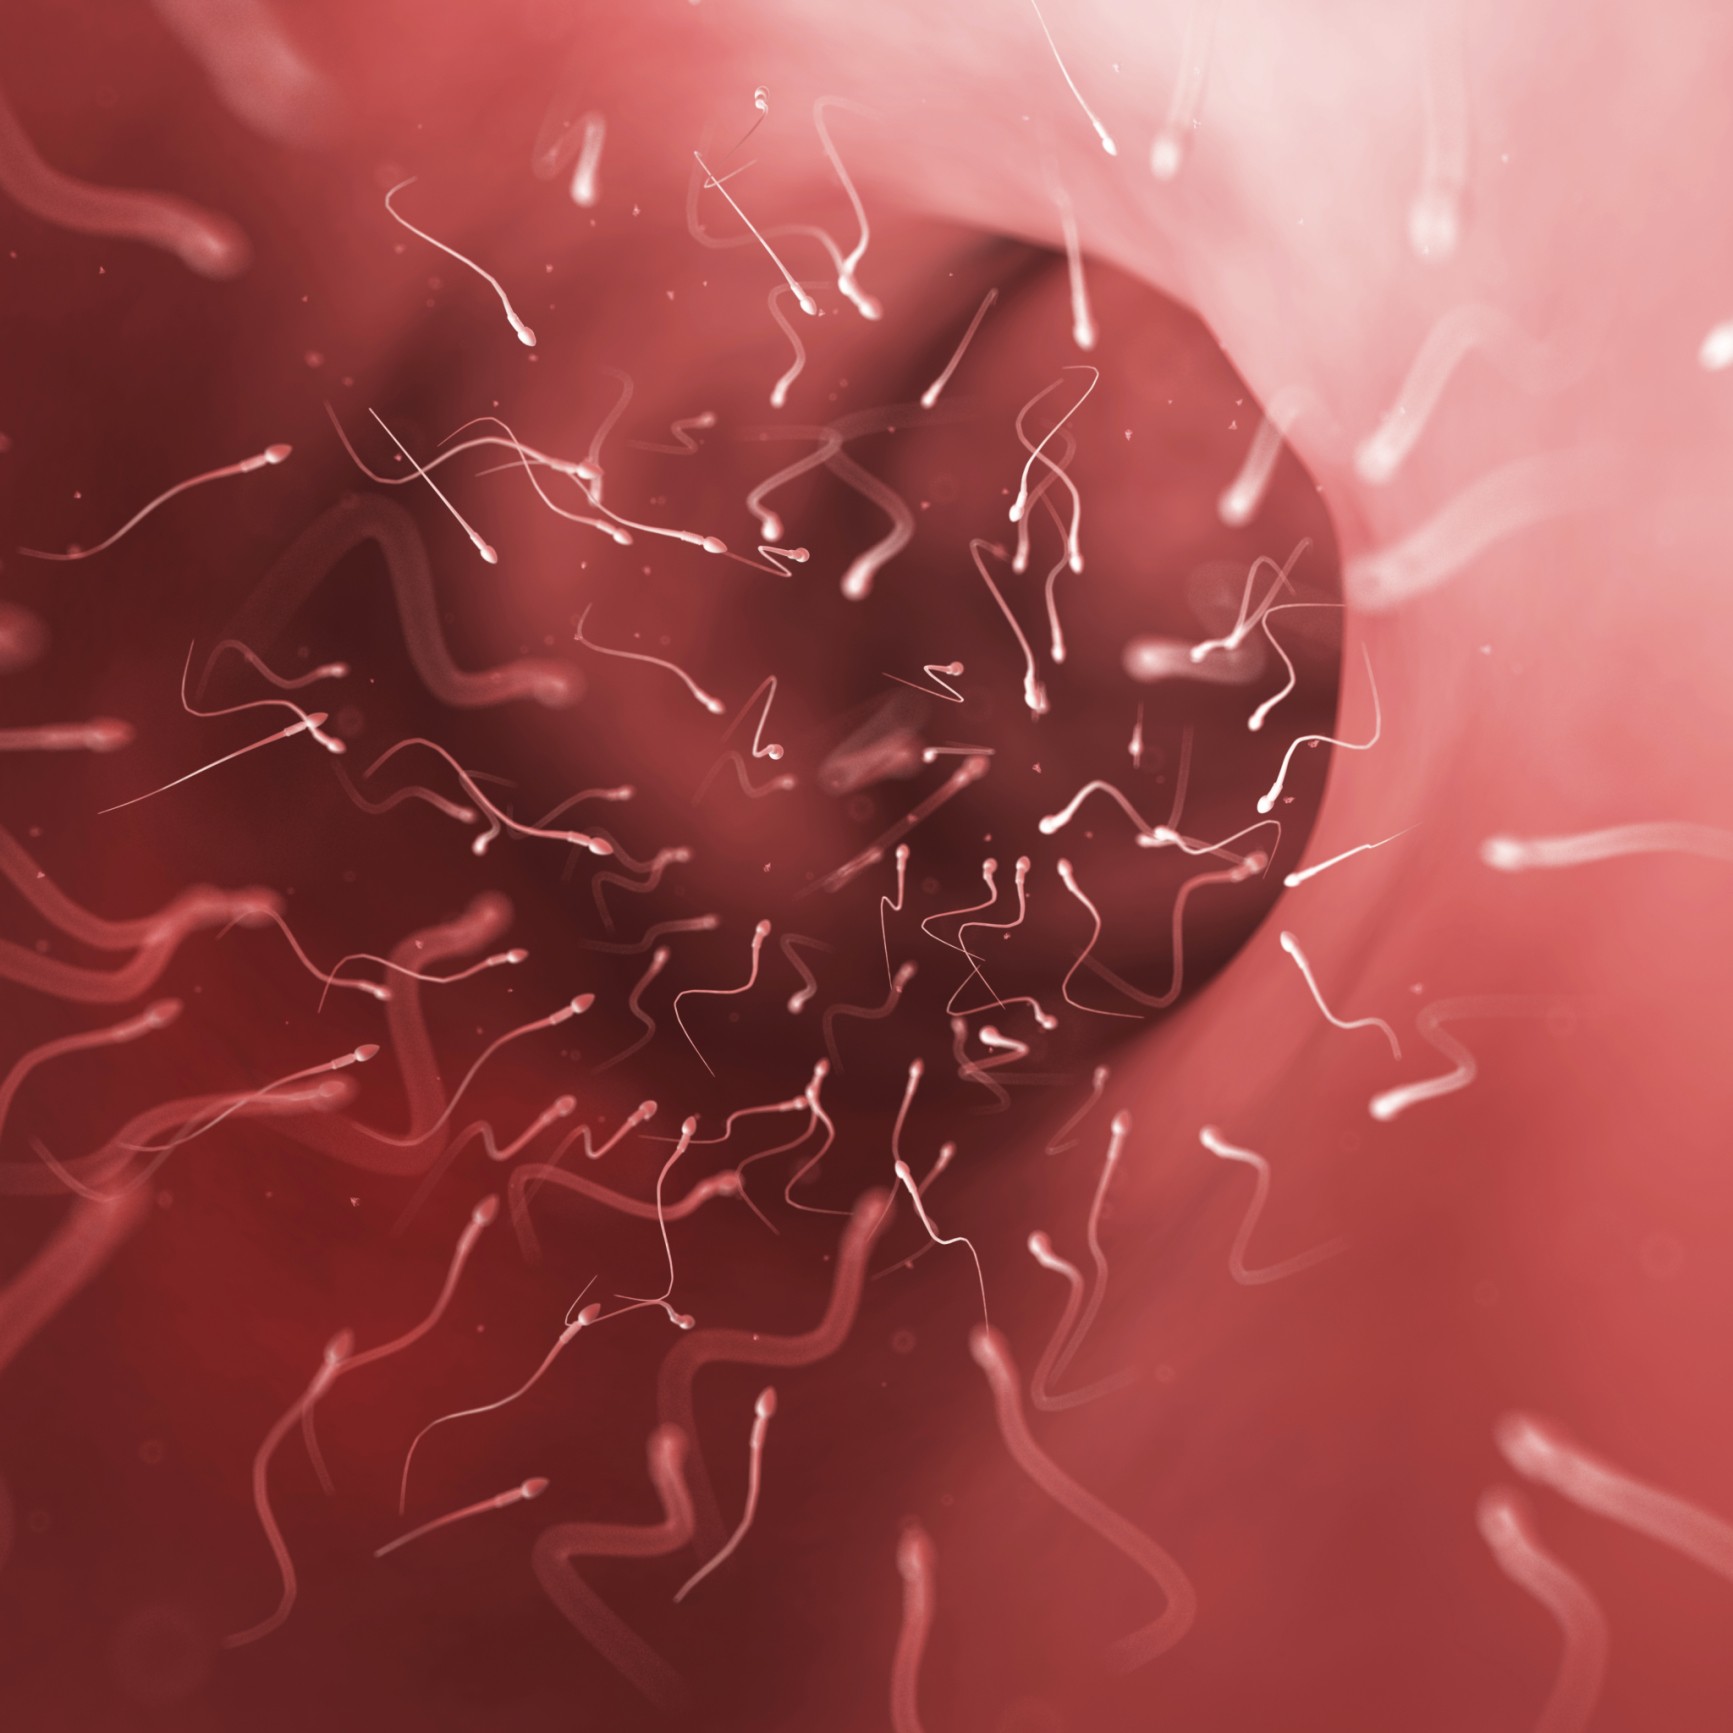 Óvulo rodeado por espermatozoides (Foto: Thinkstock)